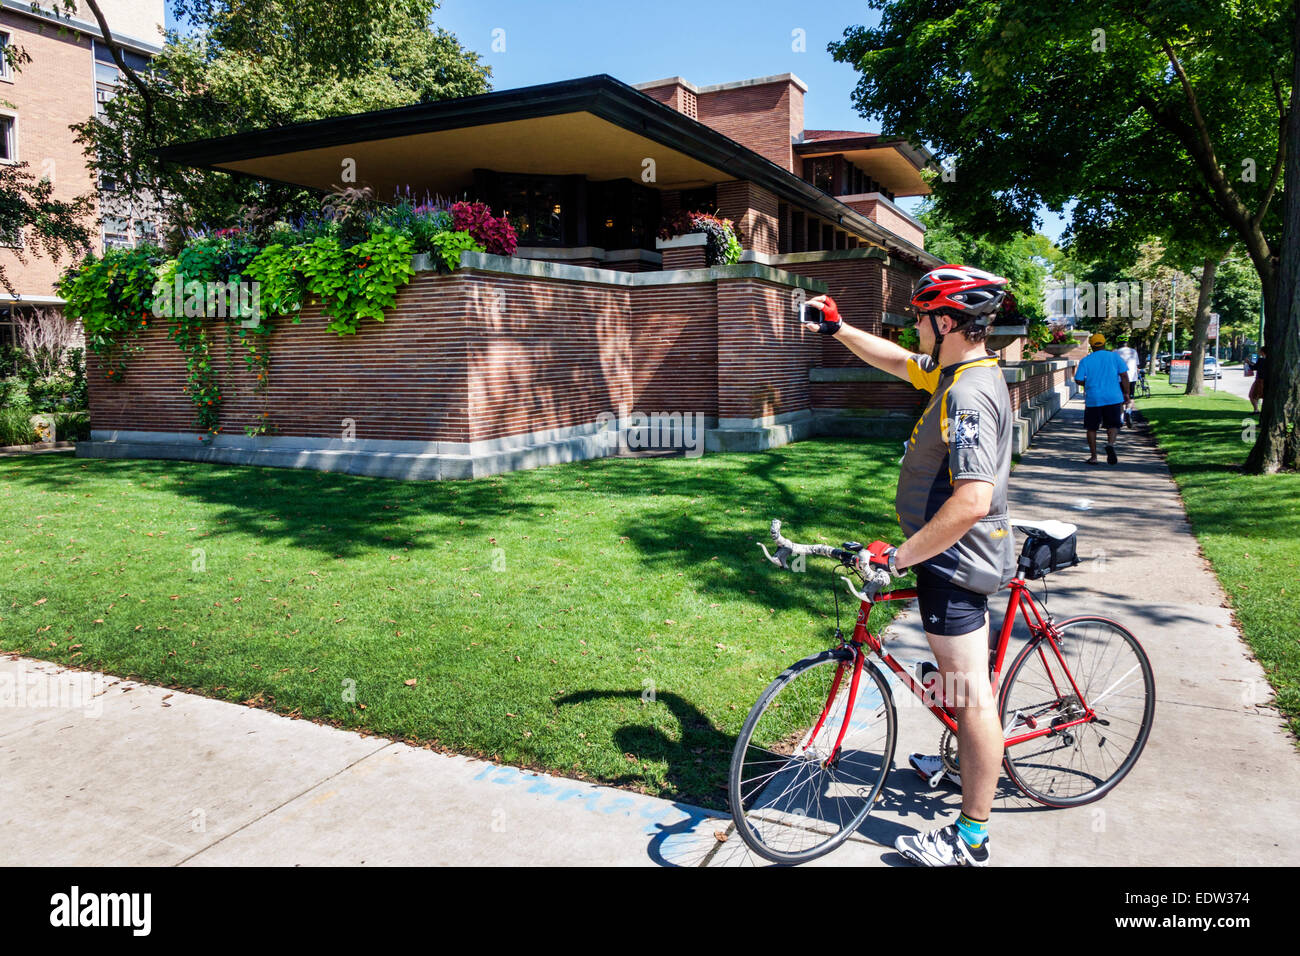 Chicago Illinois,Hyde Park,Frederick C. Robie House,campus,Université de Chicago,architecte Frank Lloyd Wright Designed,homme hommes,cycliste bicyc Banque D'Images